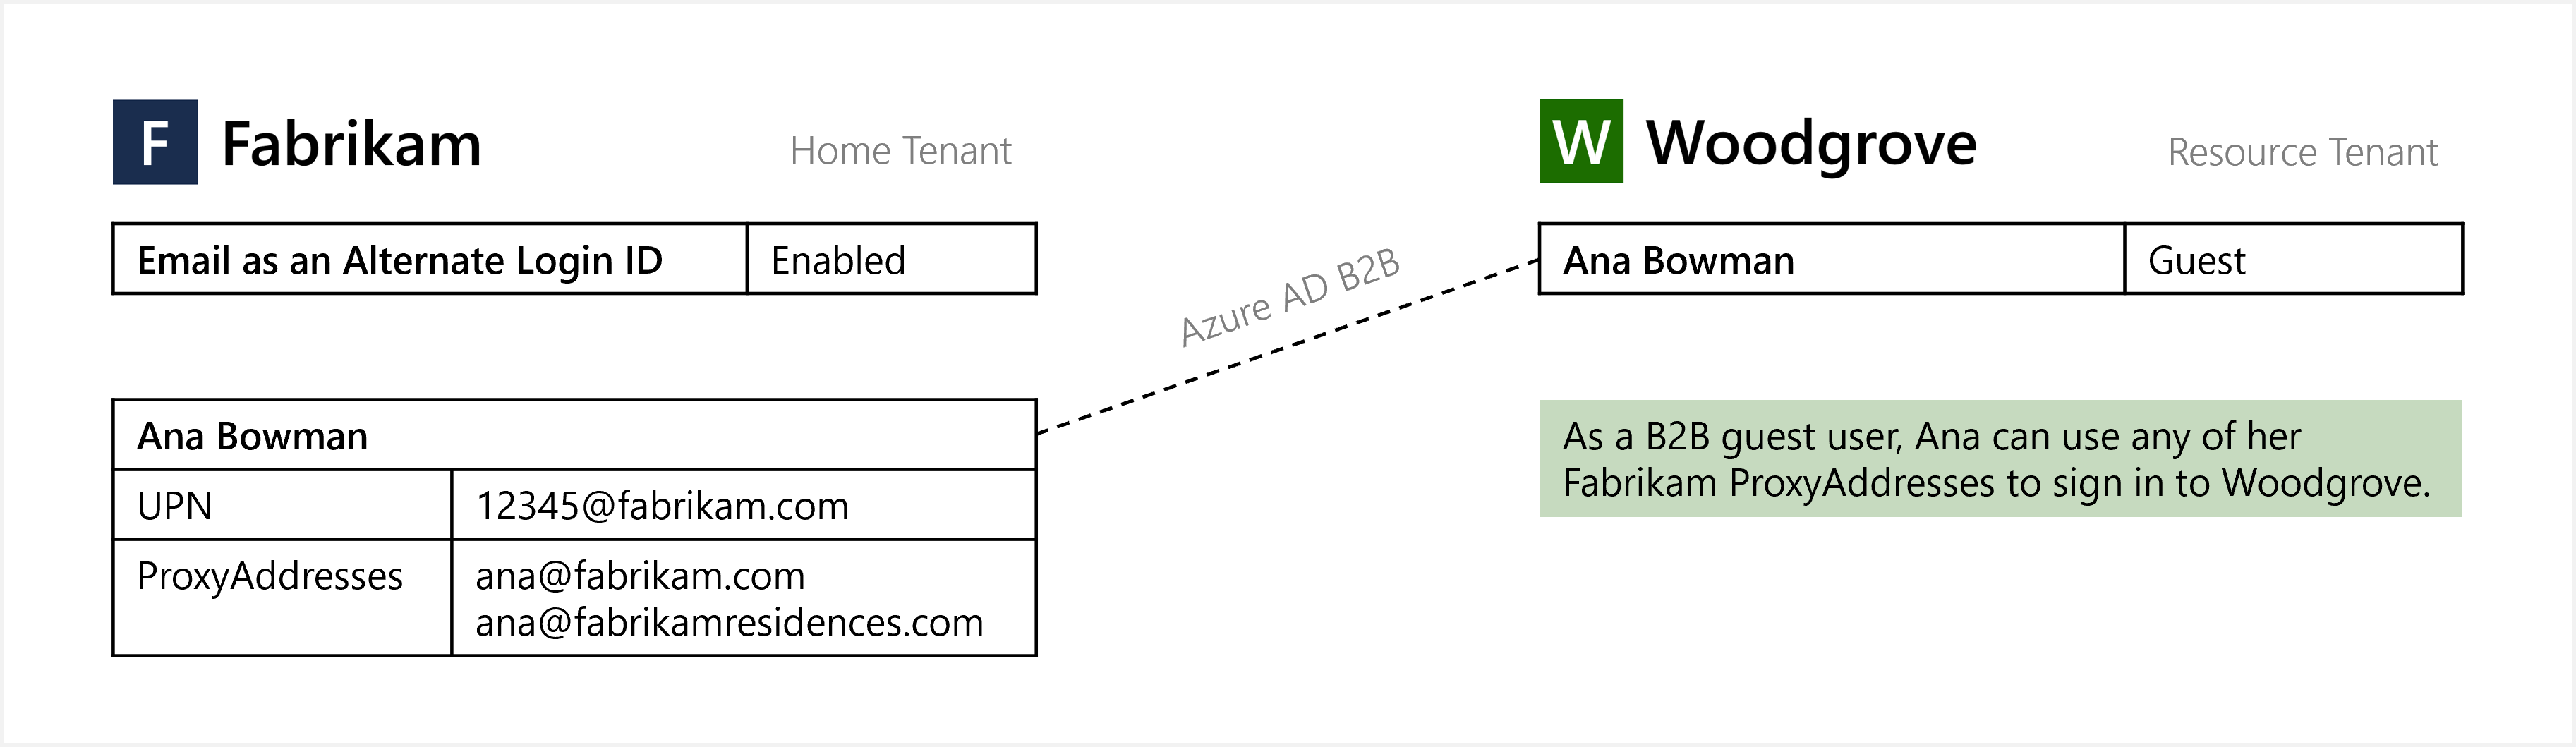 Diagrama de e-mail como um ID de login alternativo para login de usuário convidado B 2 B.